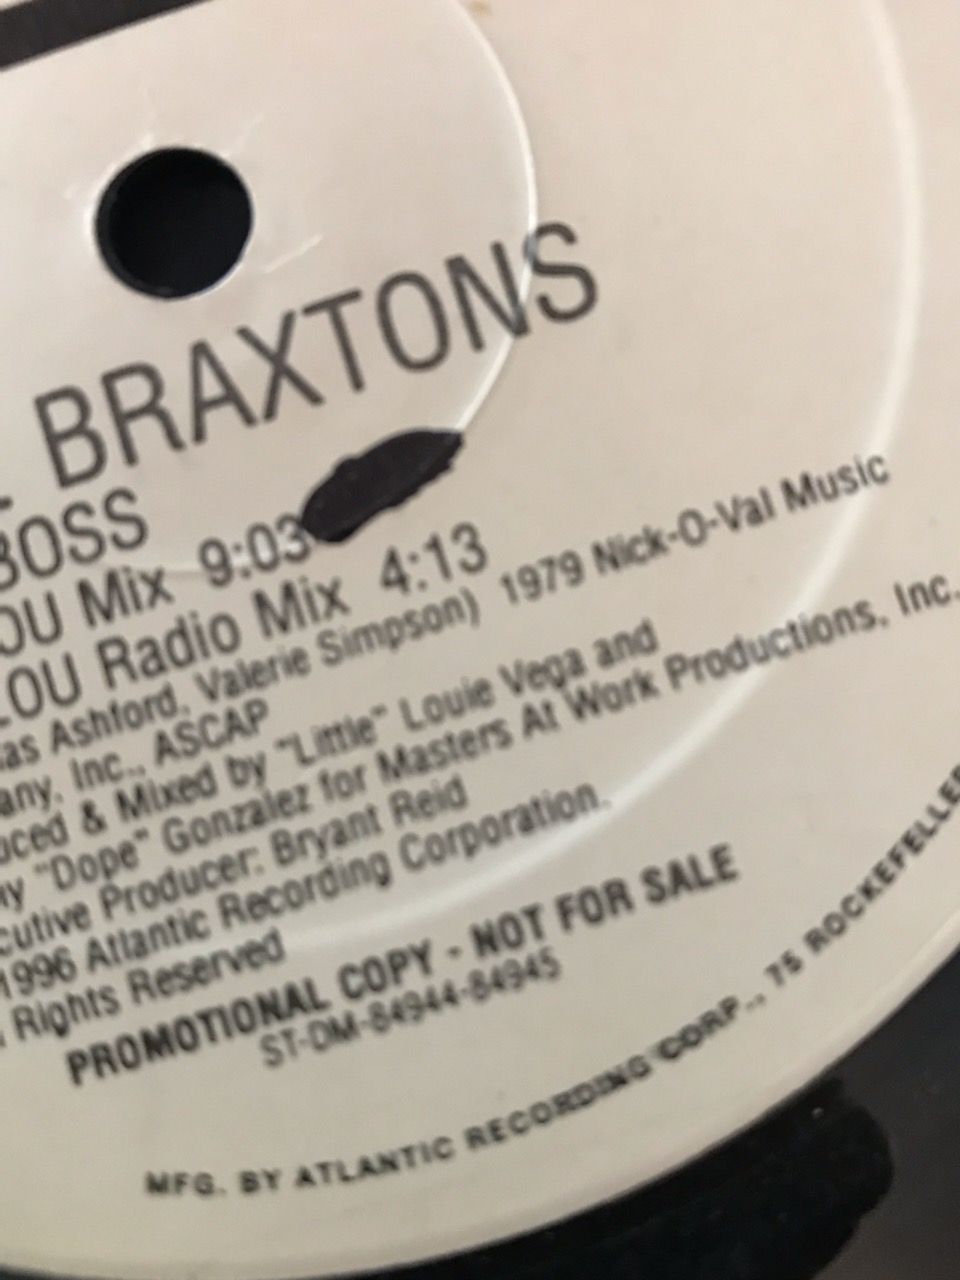 Braxtons "The Boss" 2LP Braxtons "The Boss" 2LP 3